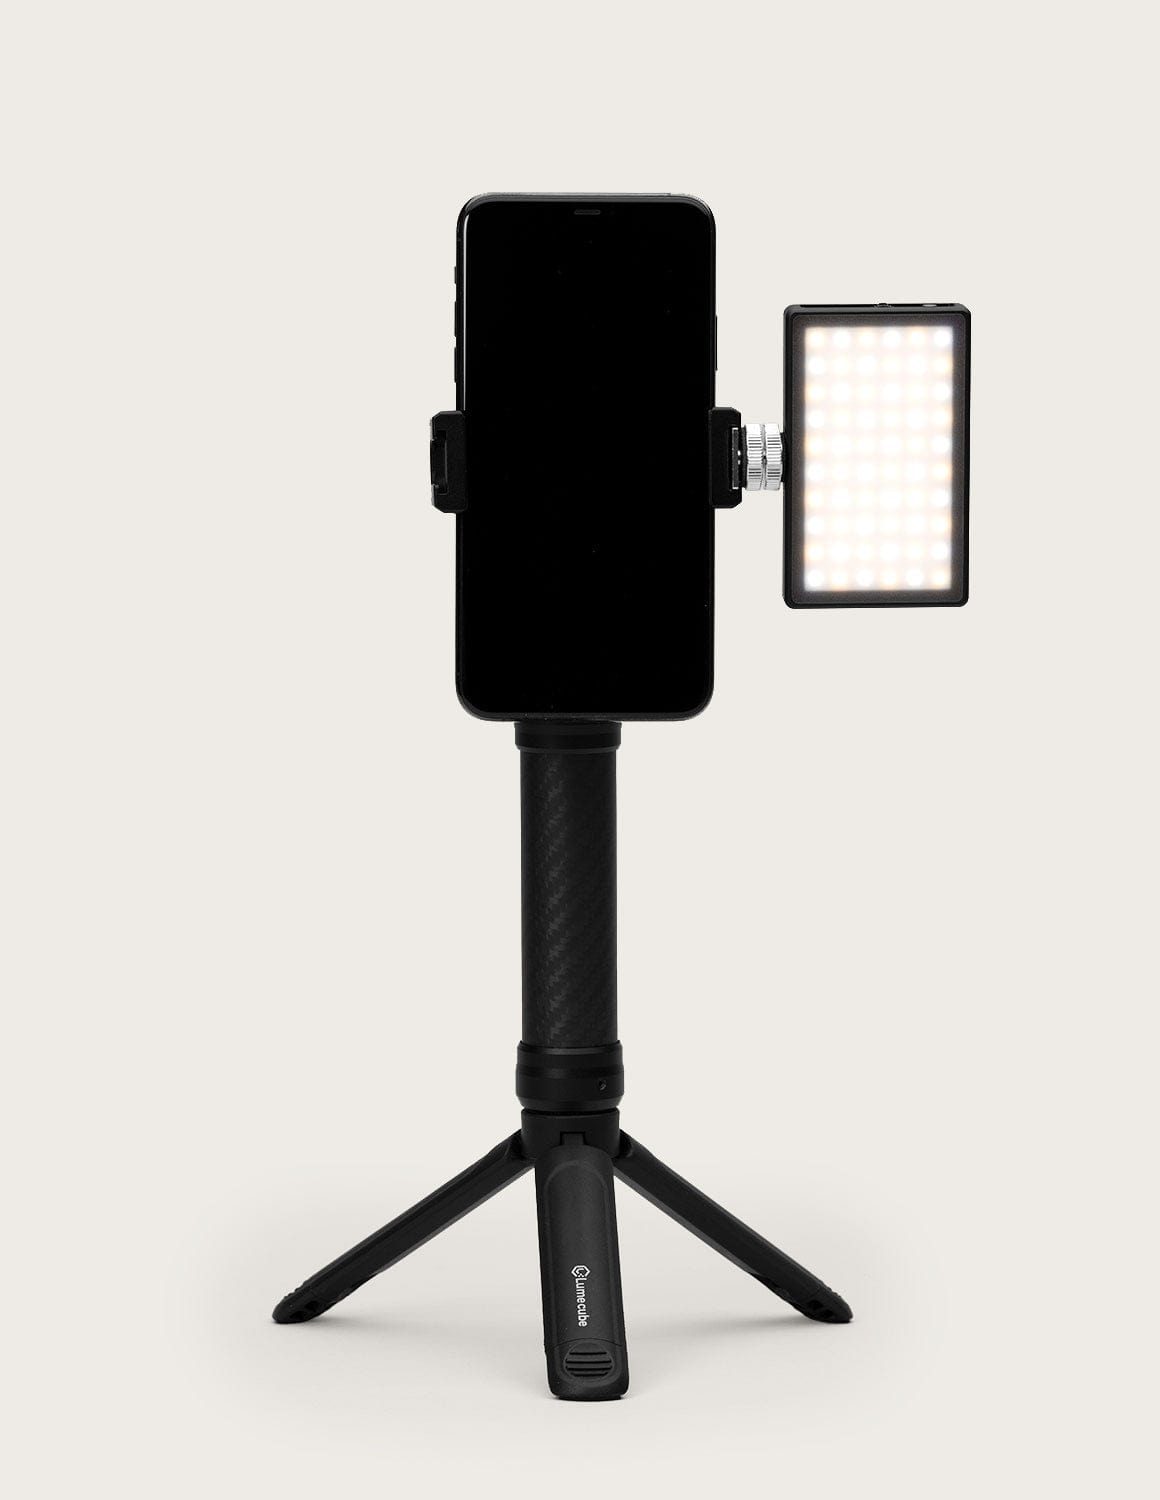 Vlog Lighting - The Mobile Creator Lighting Kit | Lume Inc.